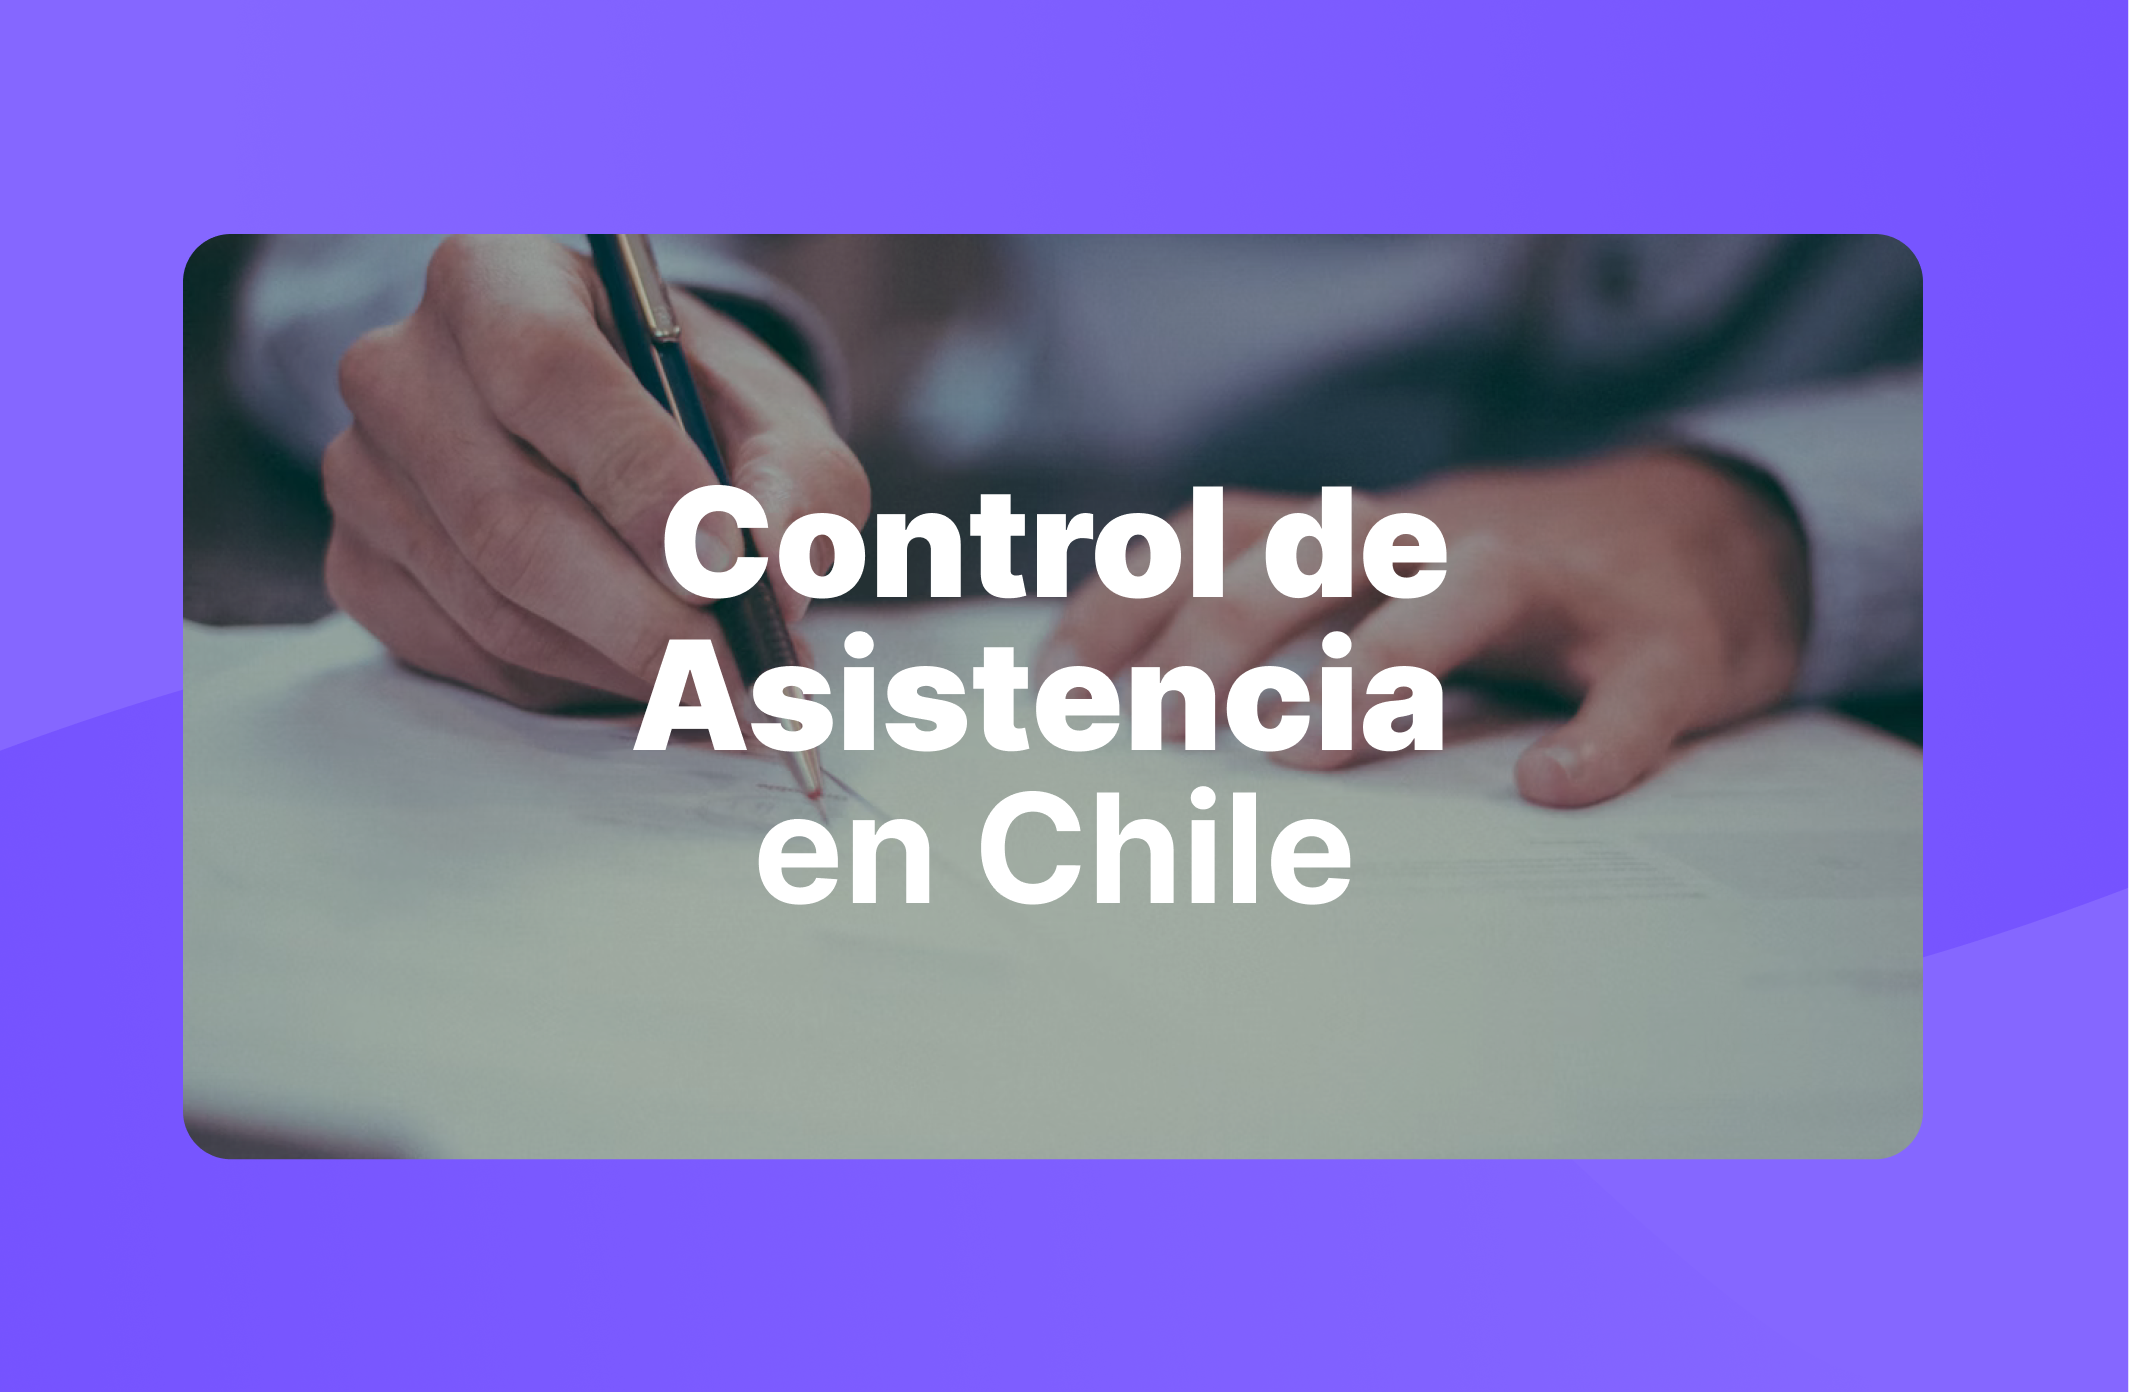 Control de asistencia en Chile